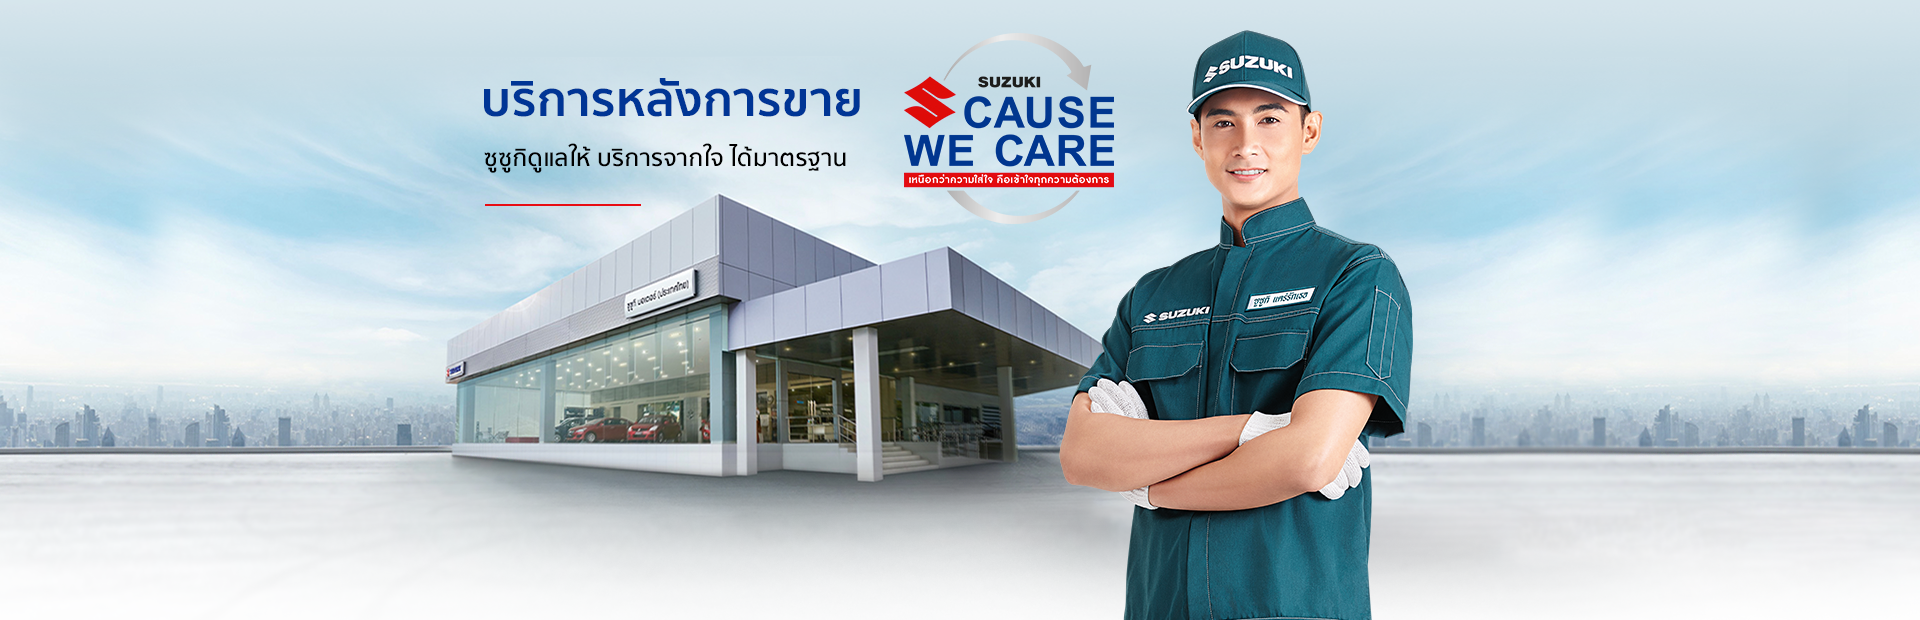 บริการหลังการขาย Aftersales services - Suzuki Cause We Care